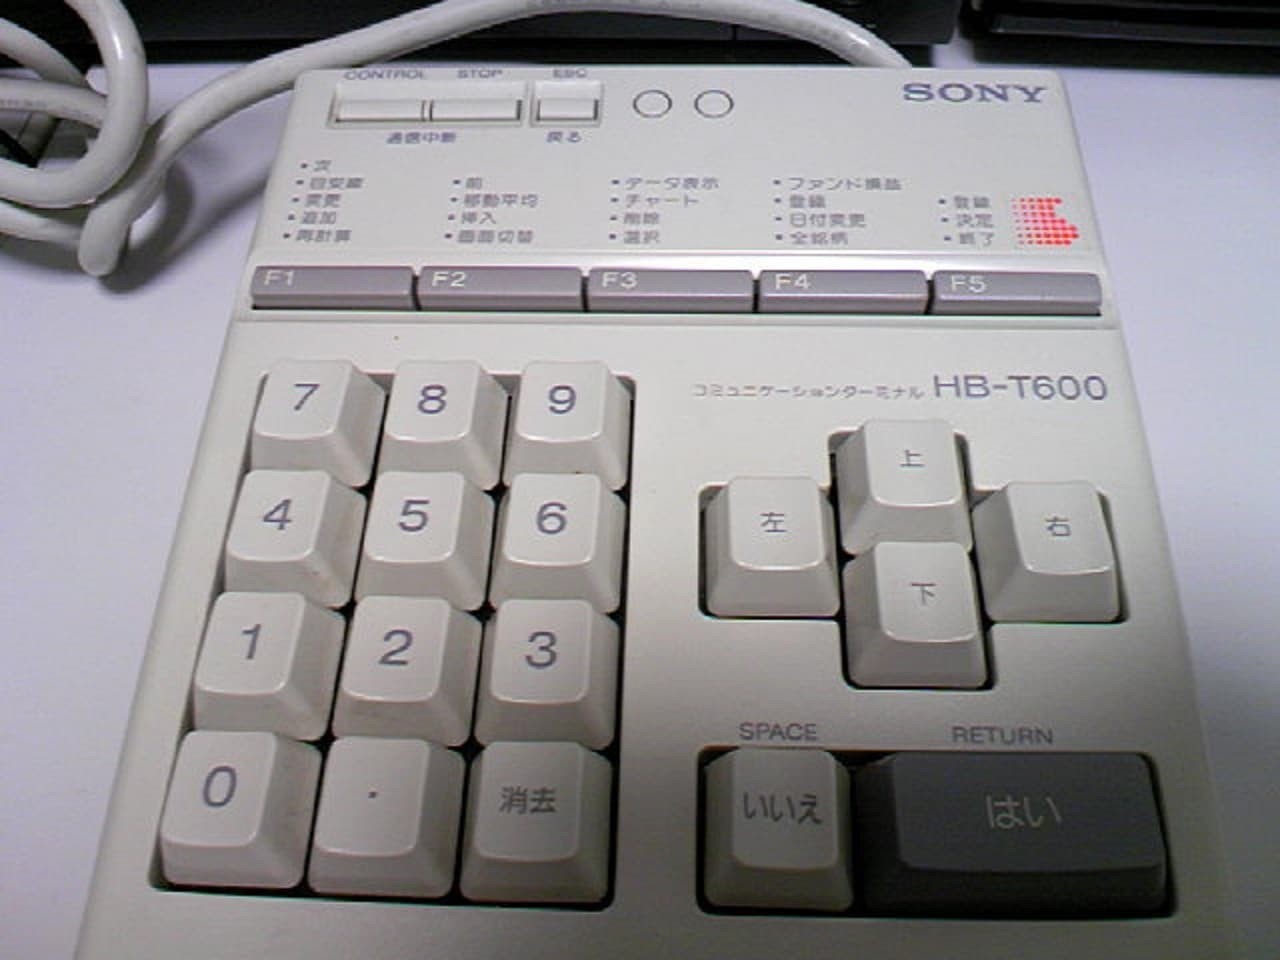 Sony HB-T600 keypad